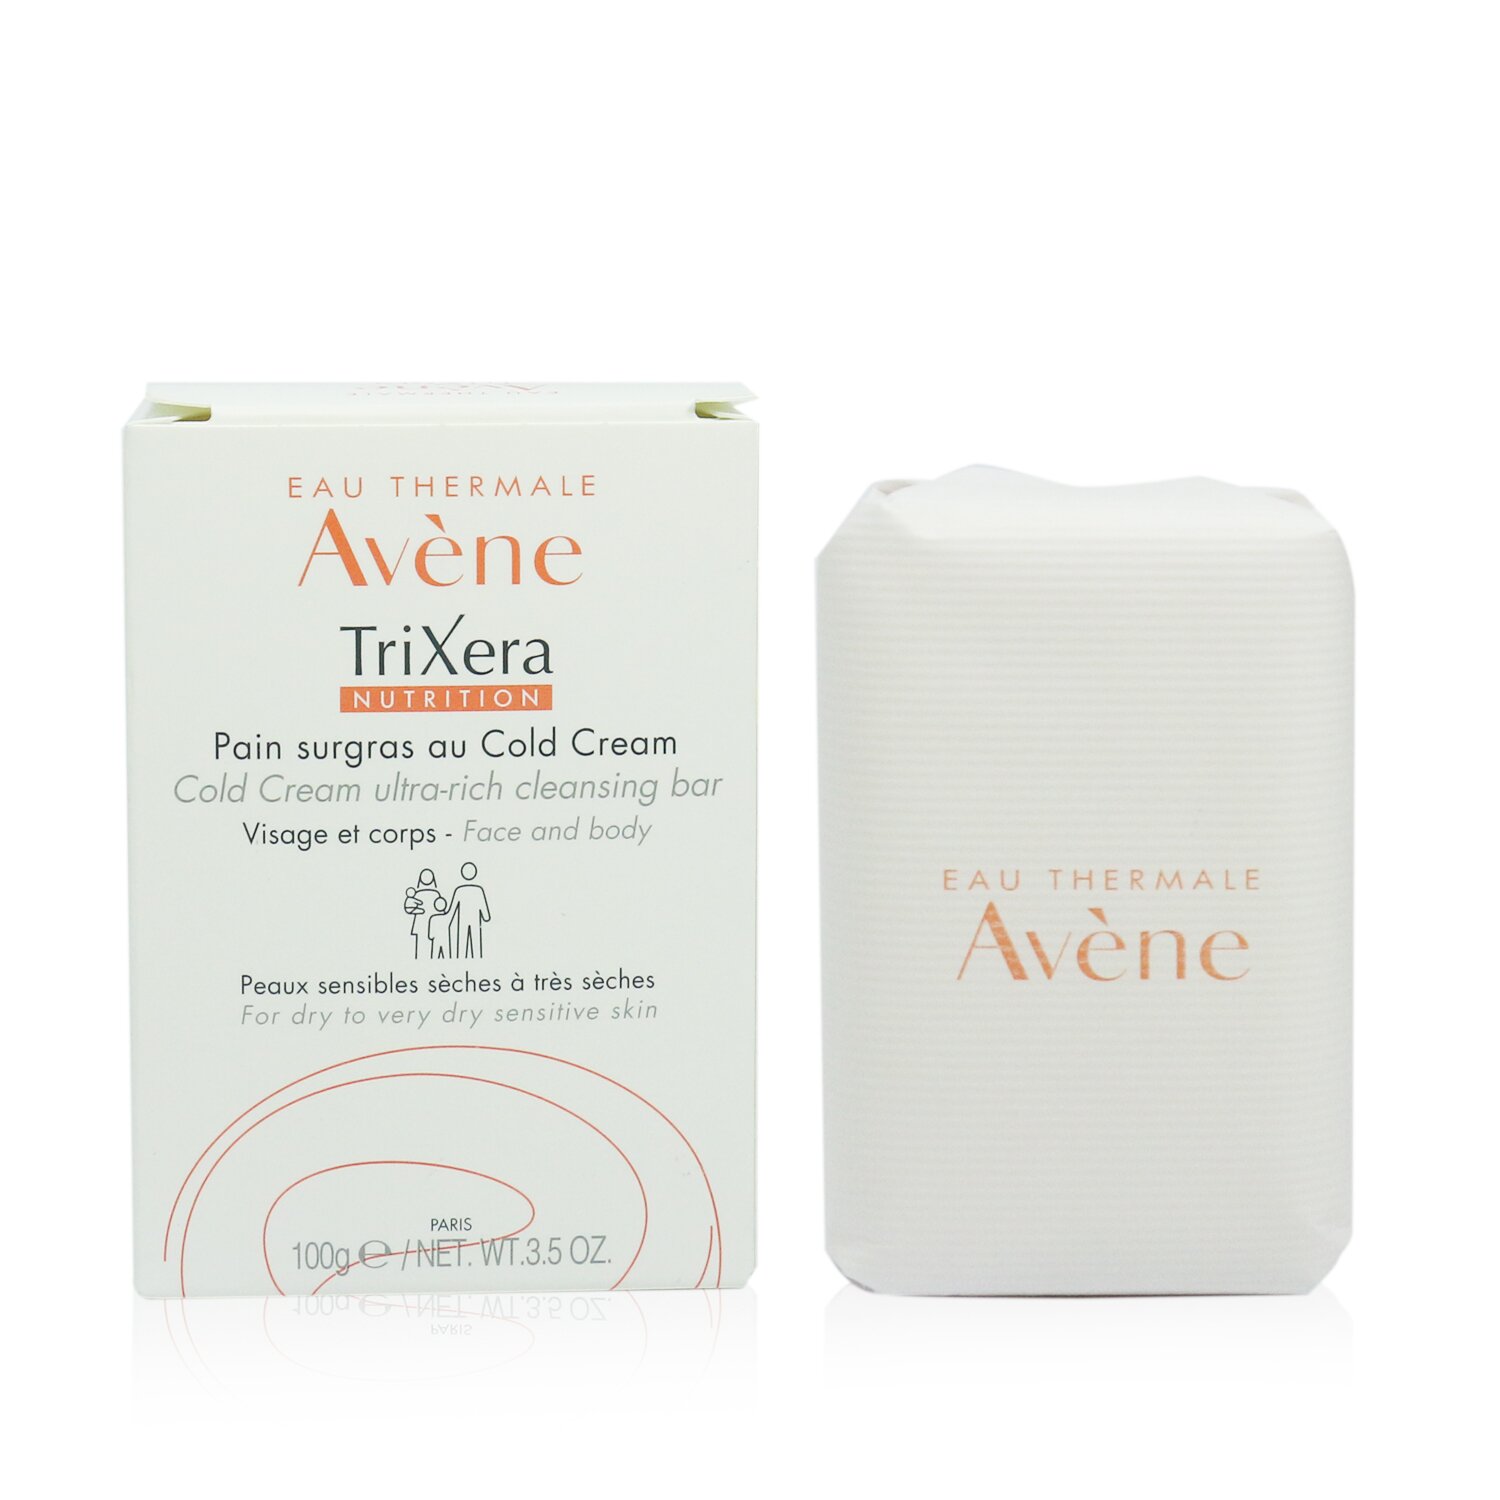 雅漾 Avene - 三效滋養潔面潔膚皂-乾燥極度乾燥敏感肌膚